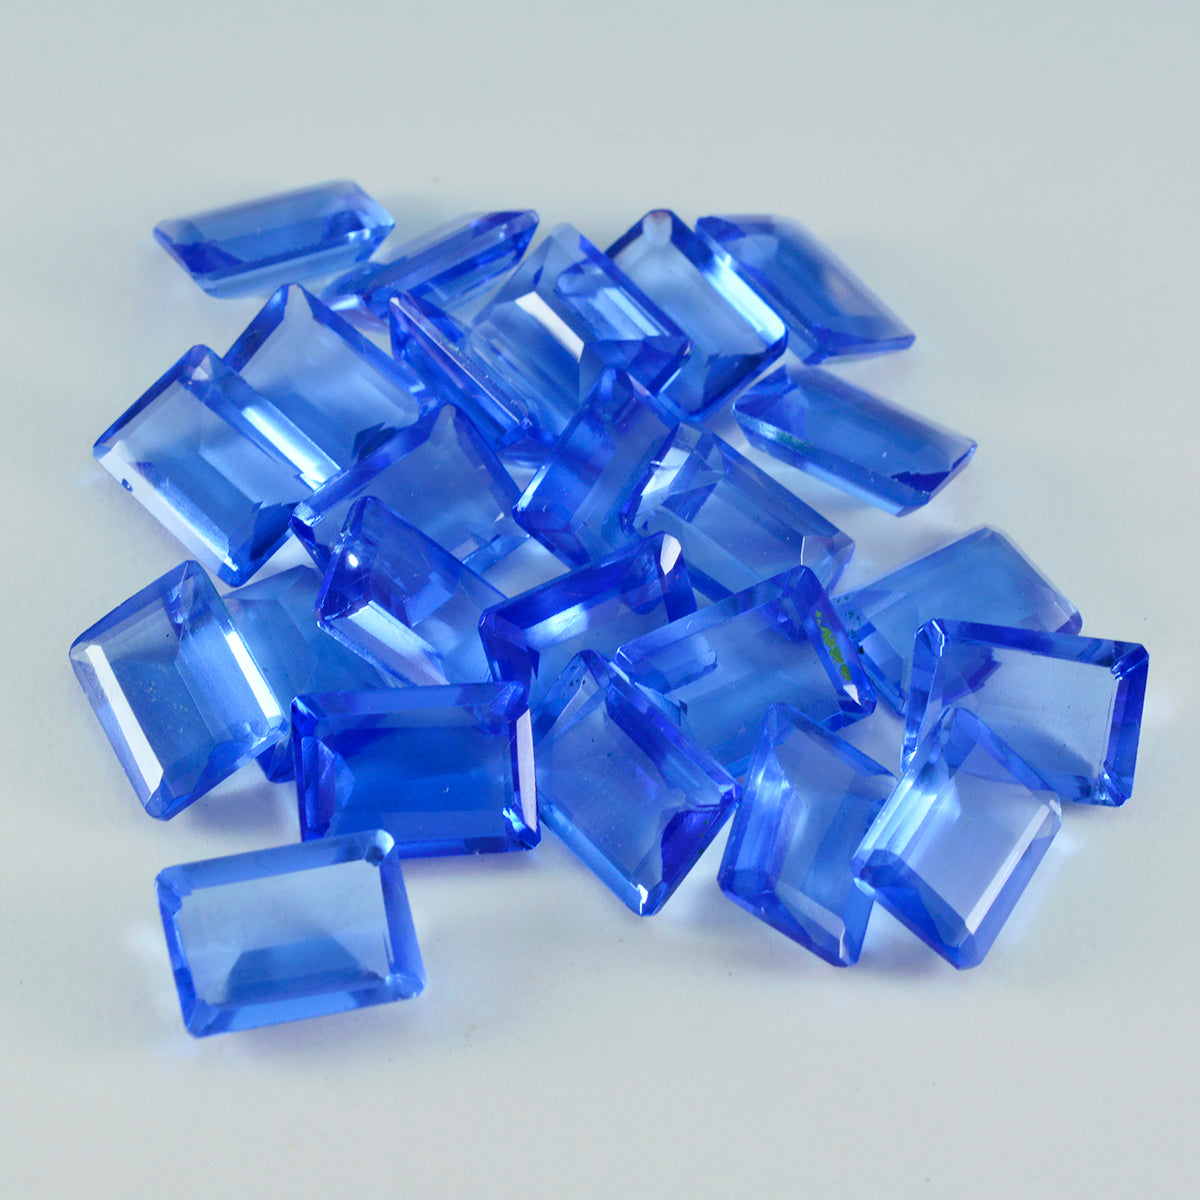 Riyogems 1 Stück blauer Saphir, CZ, facettiert, 6 x 8 mm, achteckige Form, schön aussehender, hochwertiger, loser Edelstein